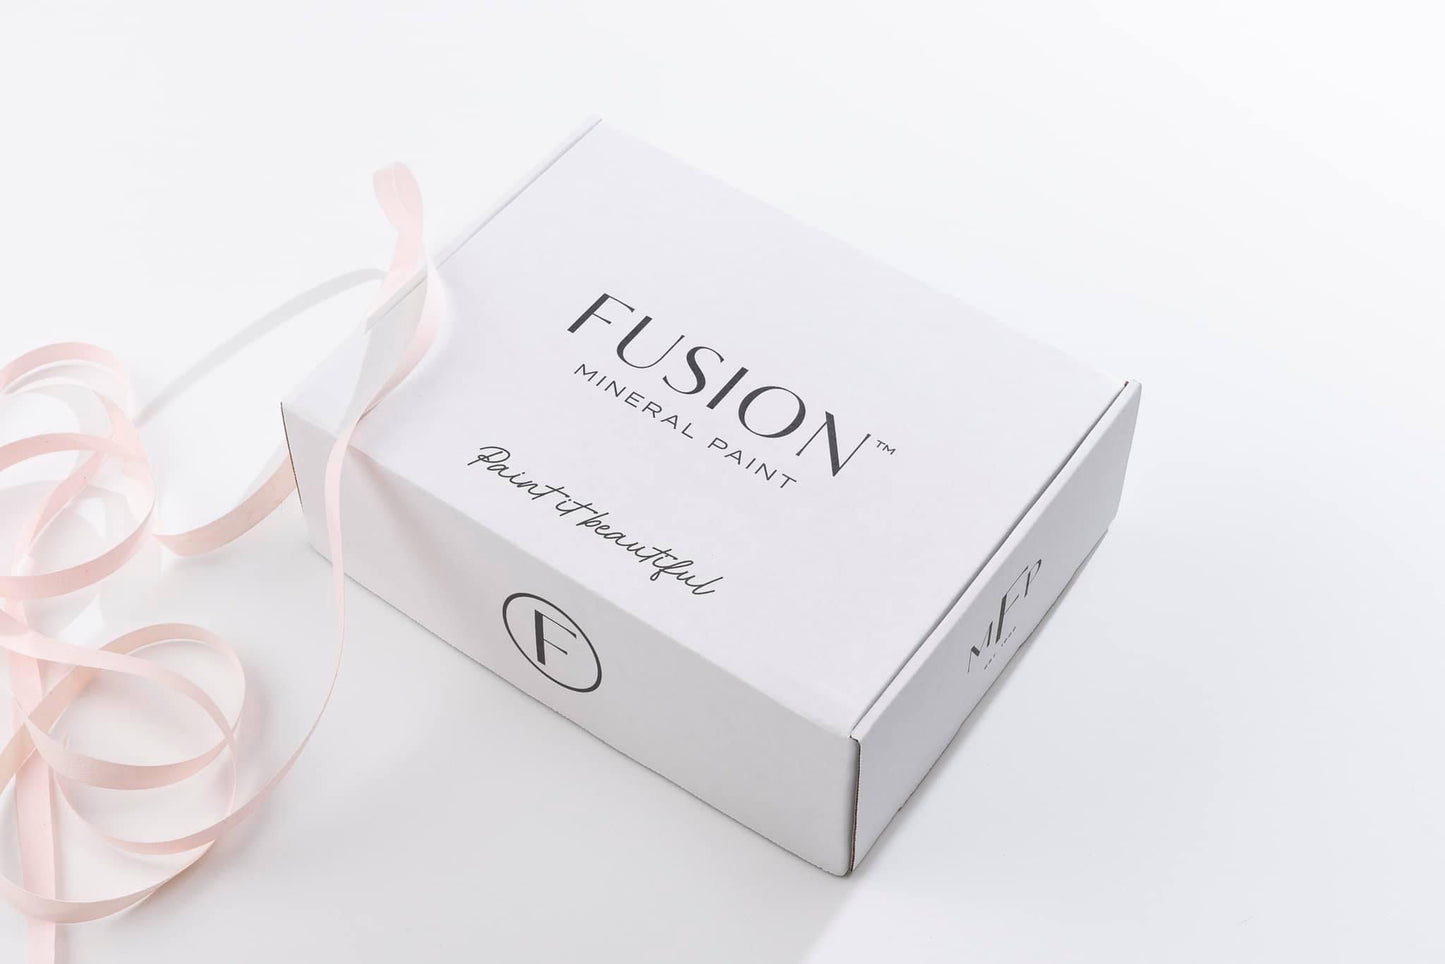 Fusion Self-Care Kit